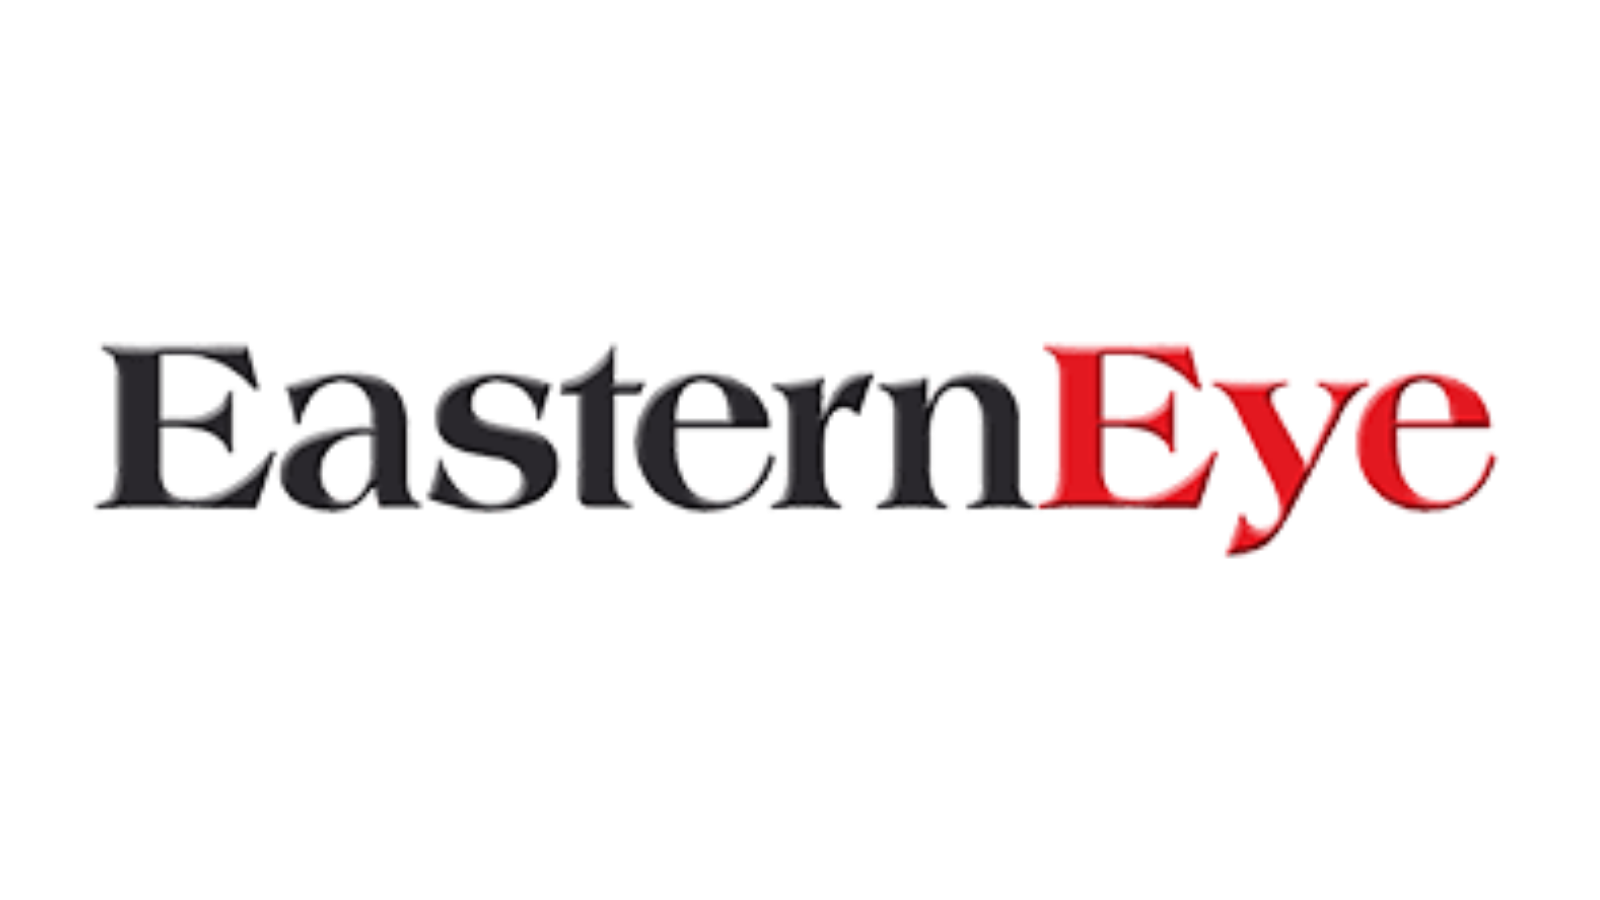 Eastern Eye